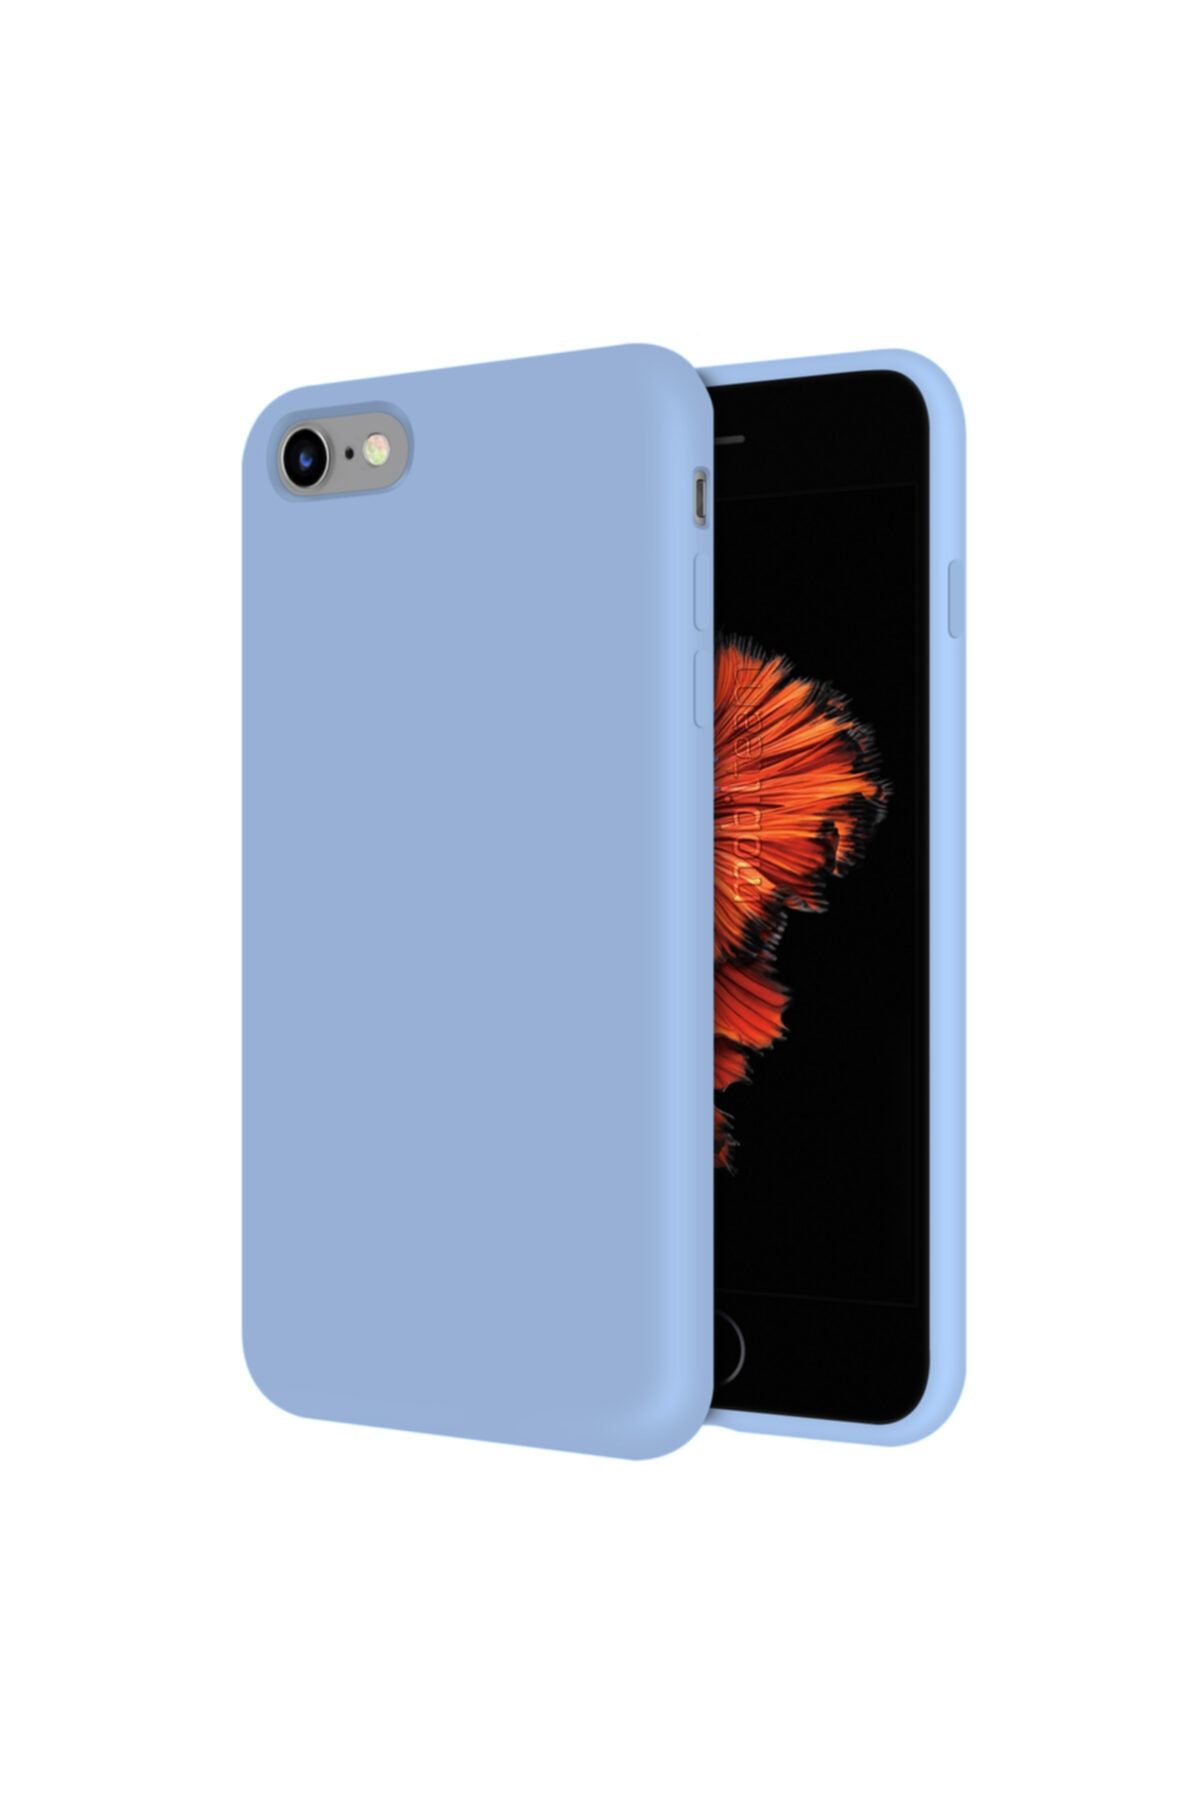 Mobilteam Apple Iphone 6s Kılıf Içi Kadife Lansman Kapak - Açık Mavi